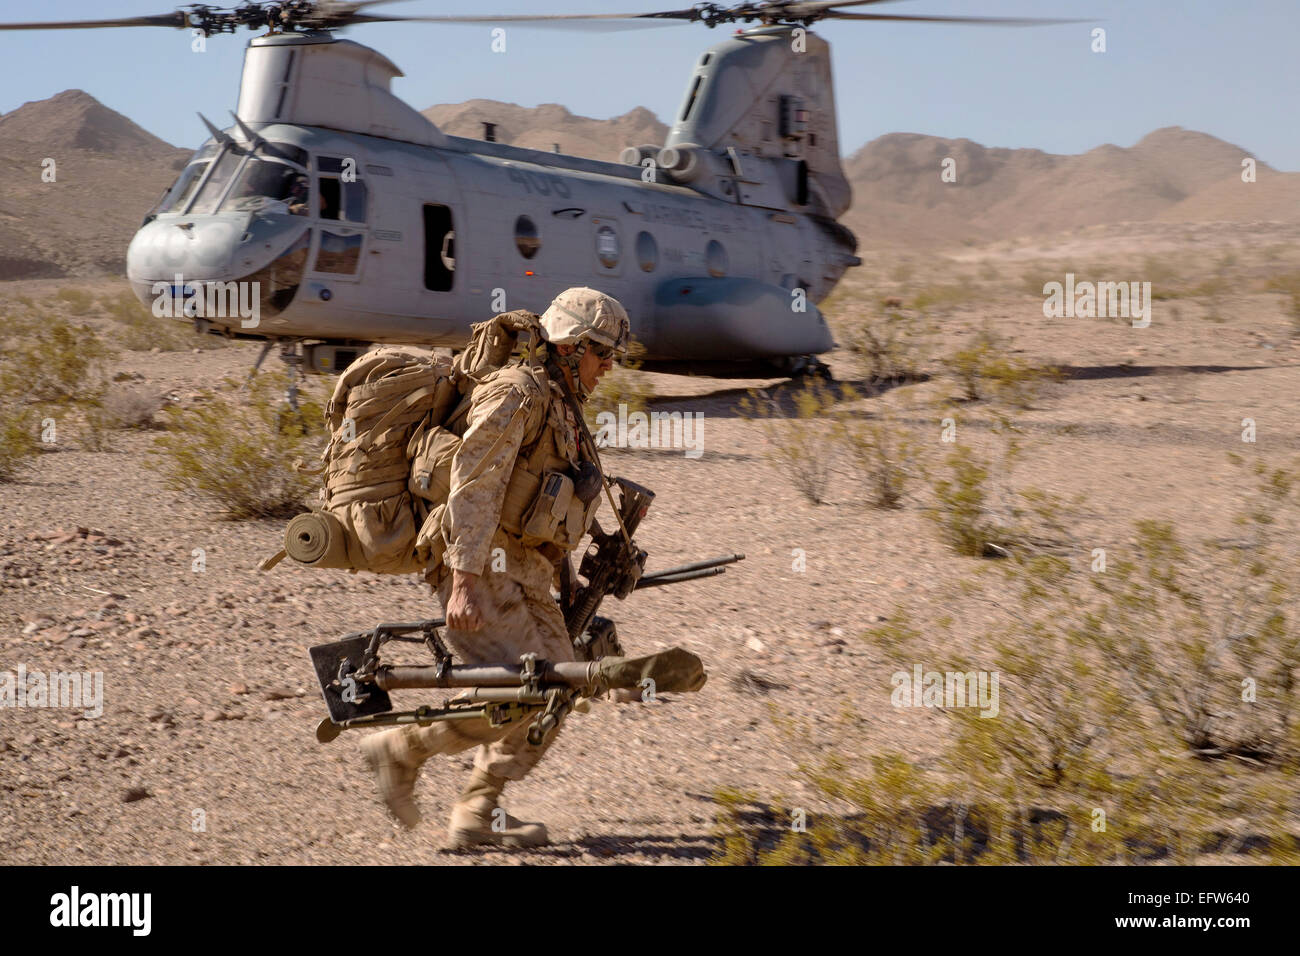 Un Marine américain porte un équipement déchargé de l'hélicoptère CH-46 Sea Knight pendant un exercice de formation intégrée, 20 juin 2013 à la Base du Corps des Marines, en Californie Twentynine Palms. Banque D'Images